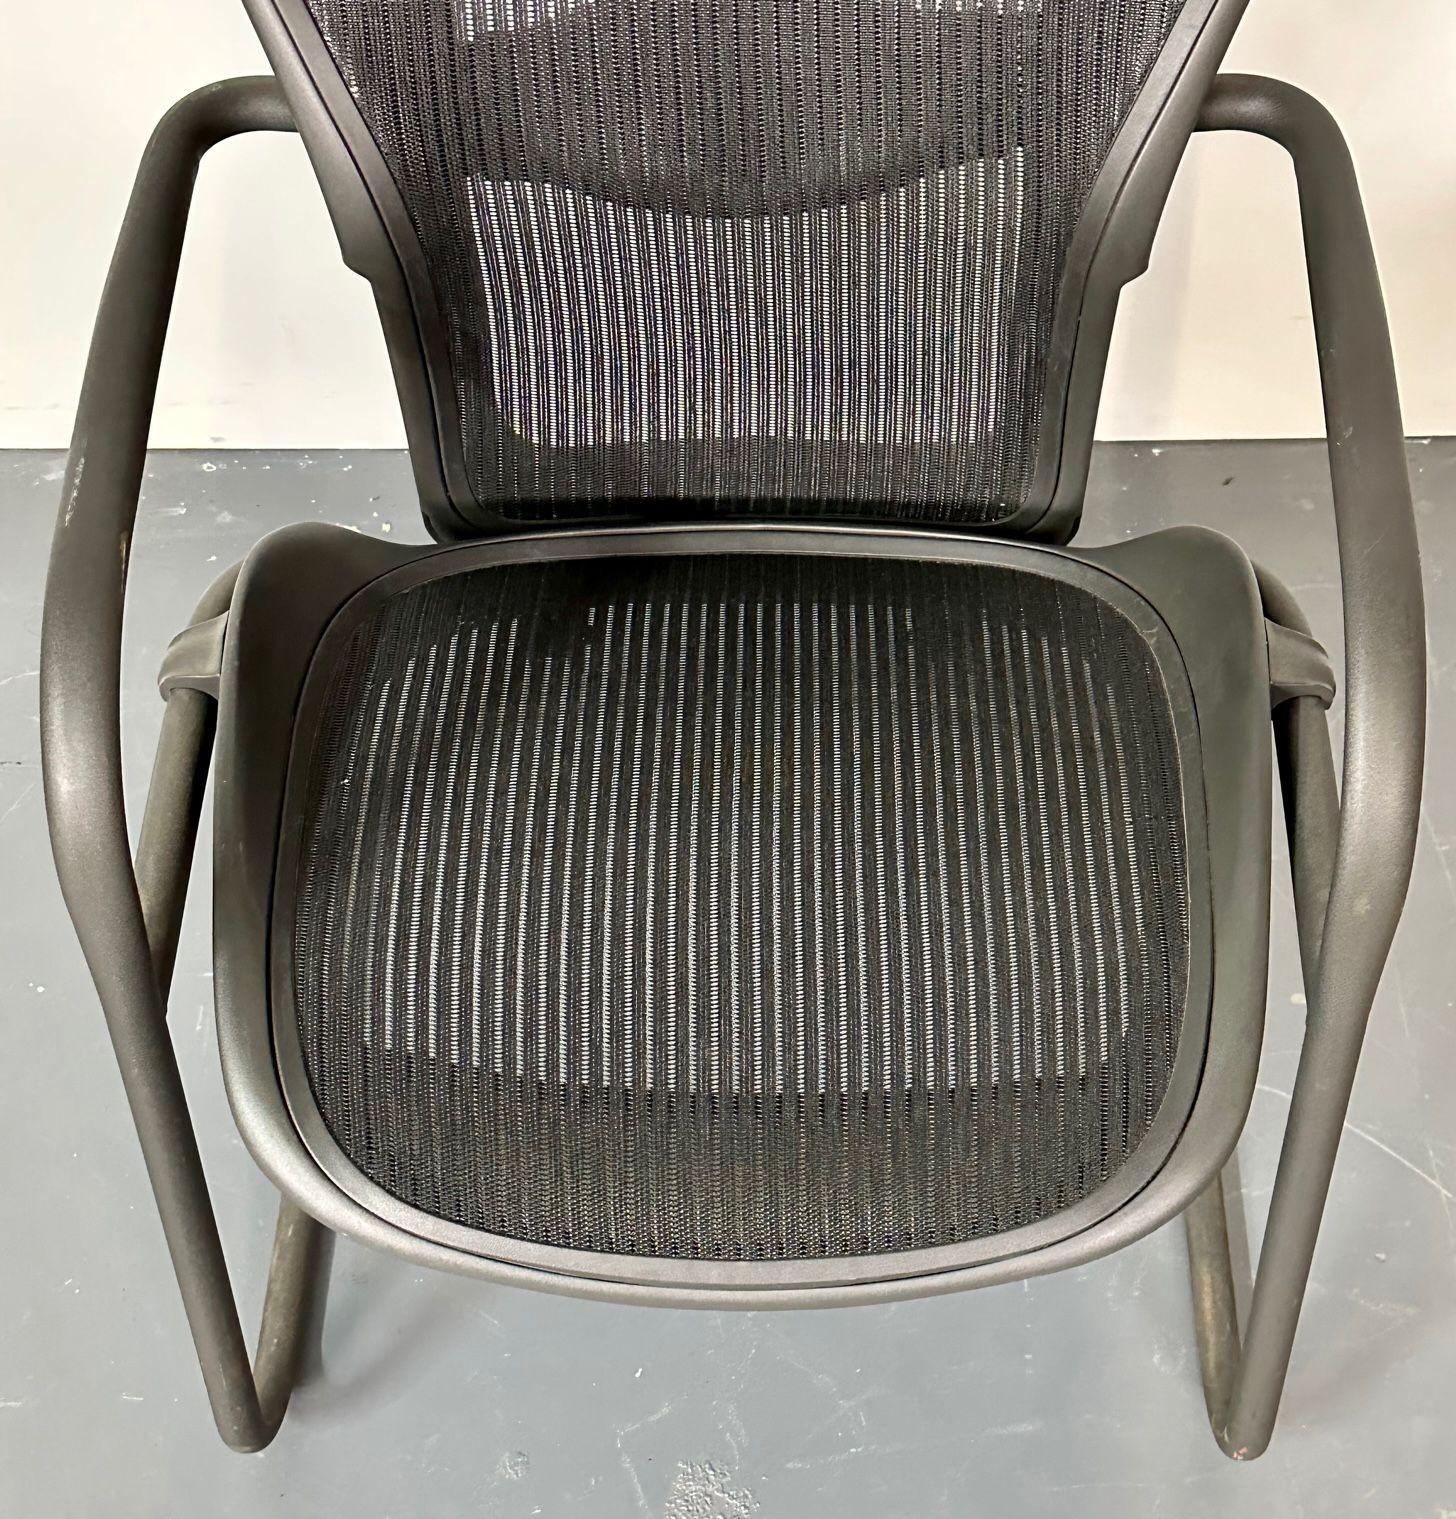 Américain Paire de chaises de bureau/de bureau en aluminium estampillées Herman Miller de style mi-siècle moderne